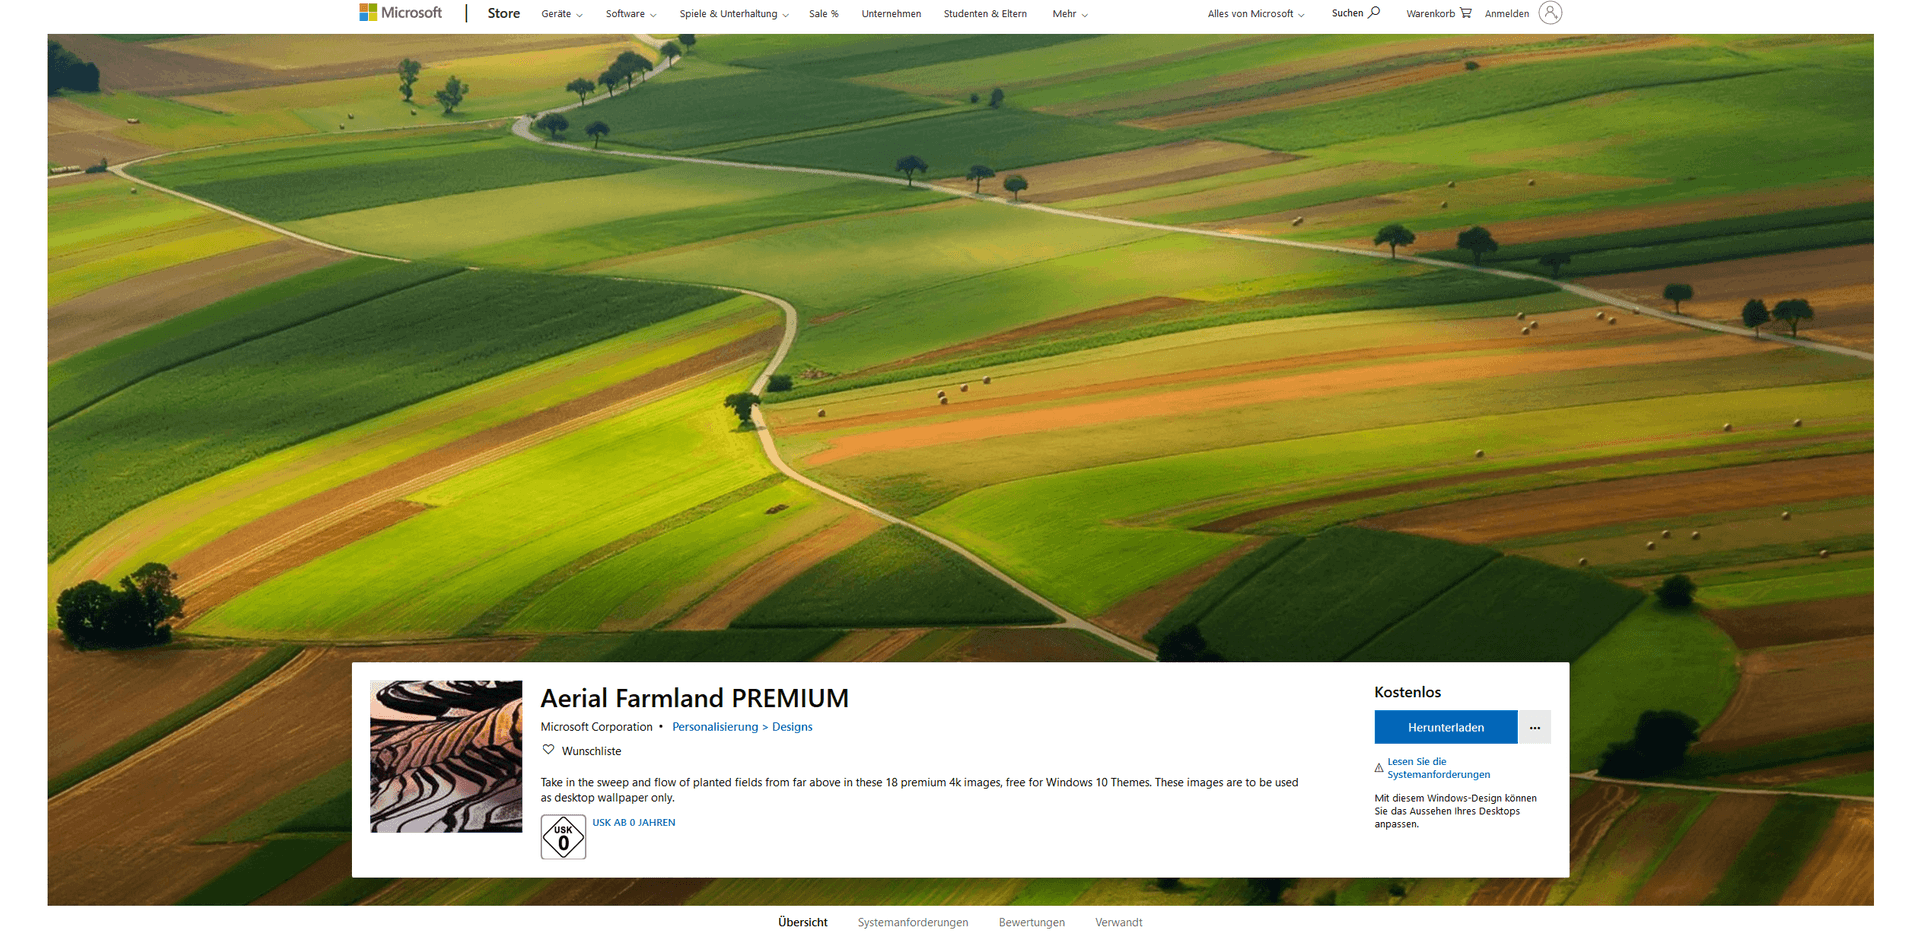 Die Landwirtschaft formt weltweit die Struktur der Natur. Die passenden Bilder gibt es im "Aerial Farmland"-Paket.